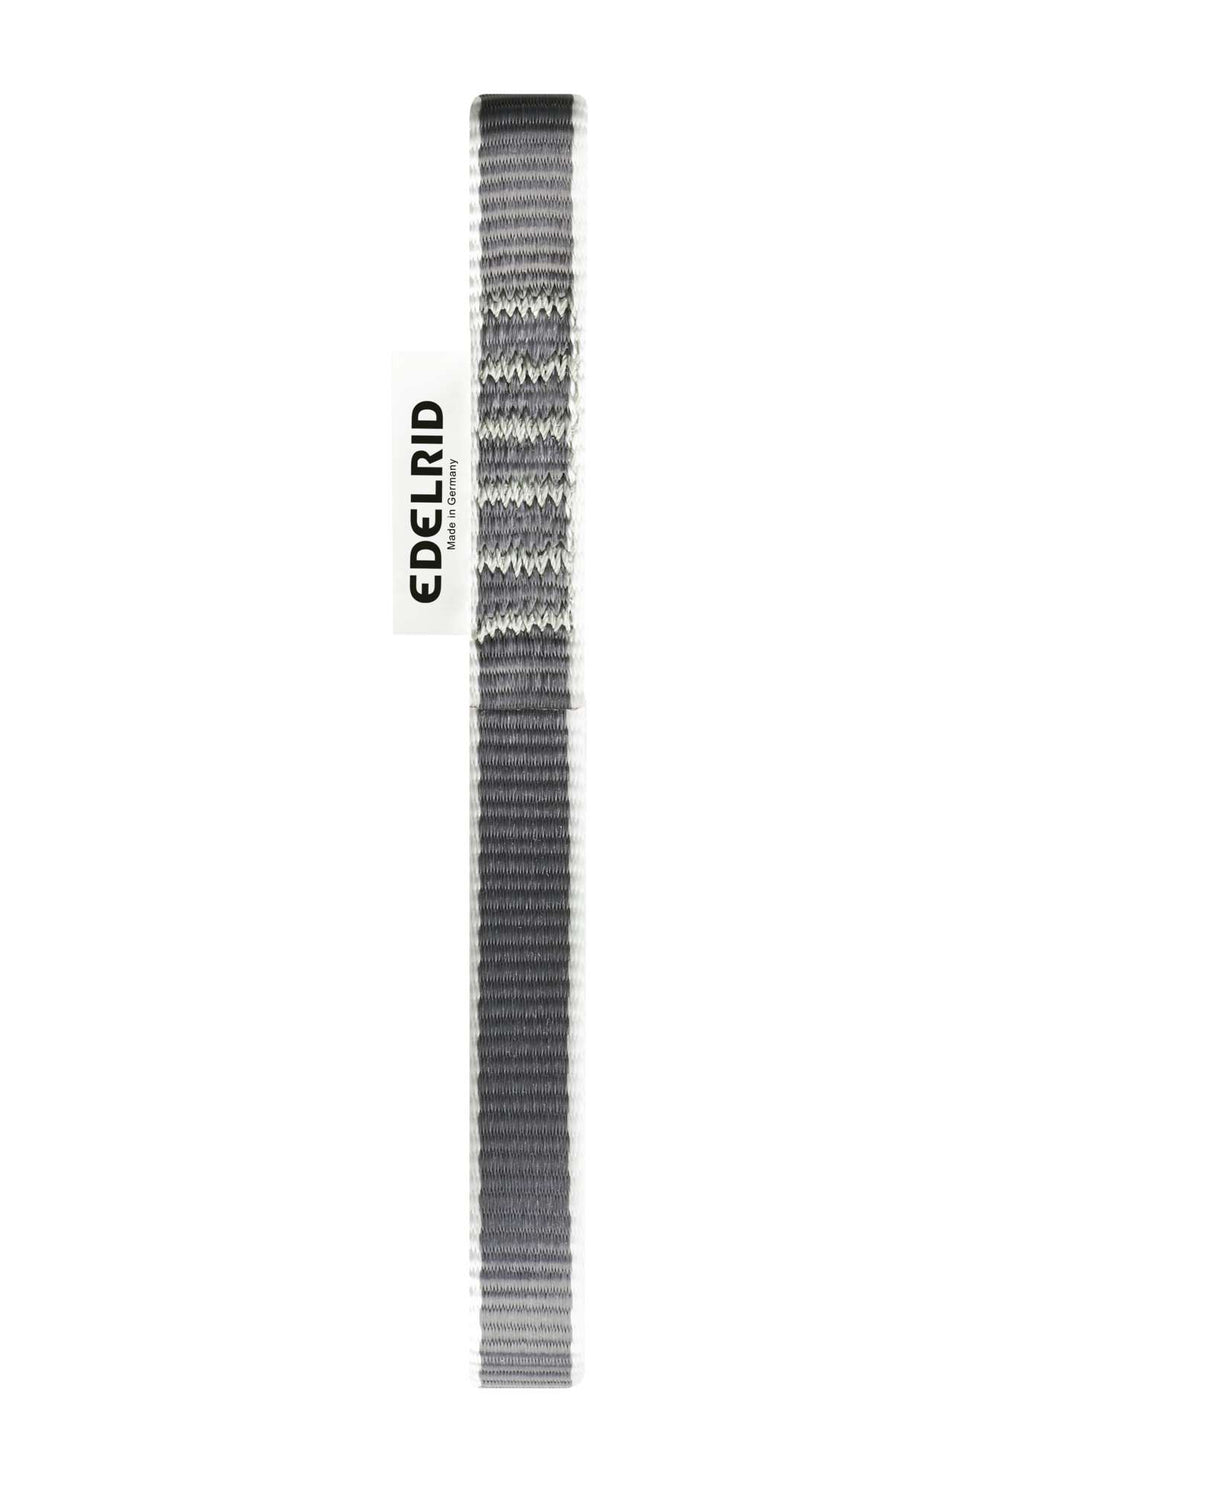 Edelrid Expressschlinge PES Express Sling - 16mm mit Antitwist